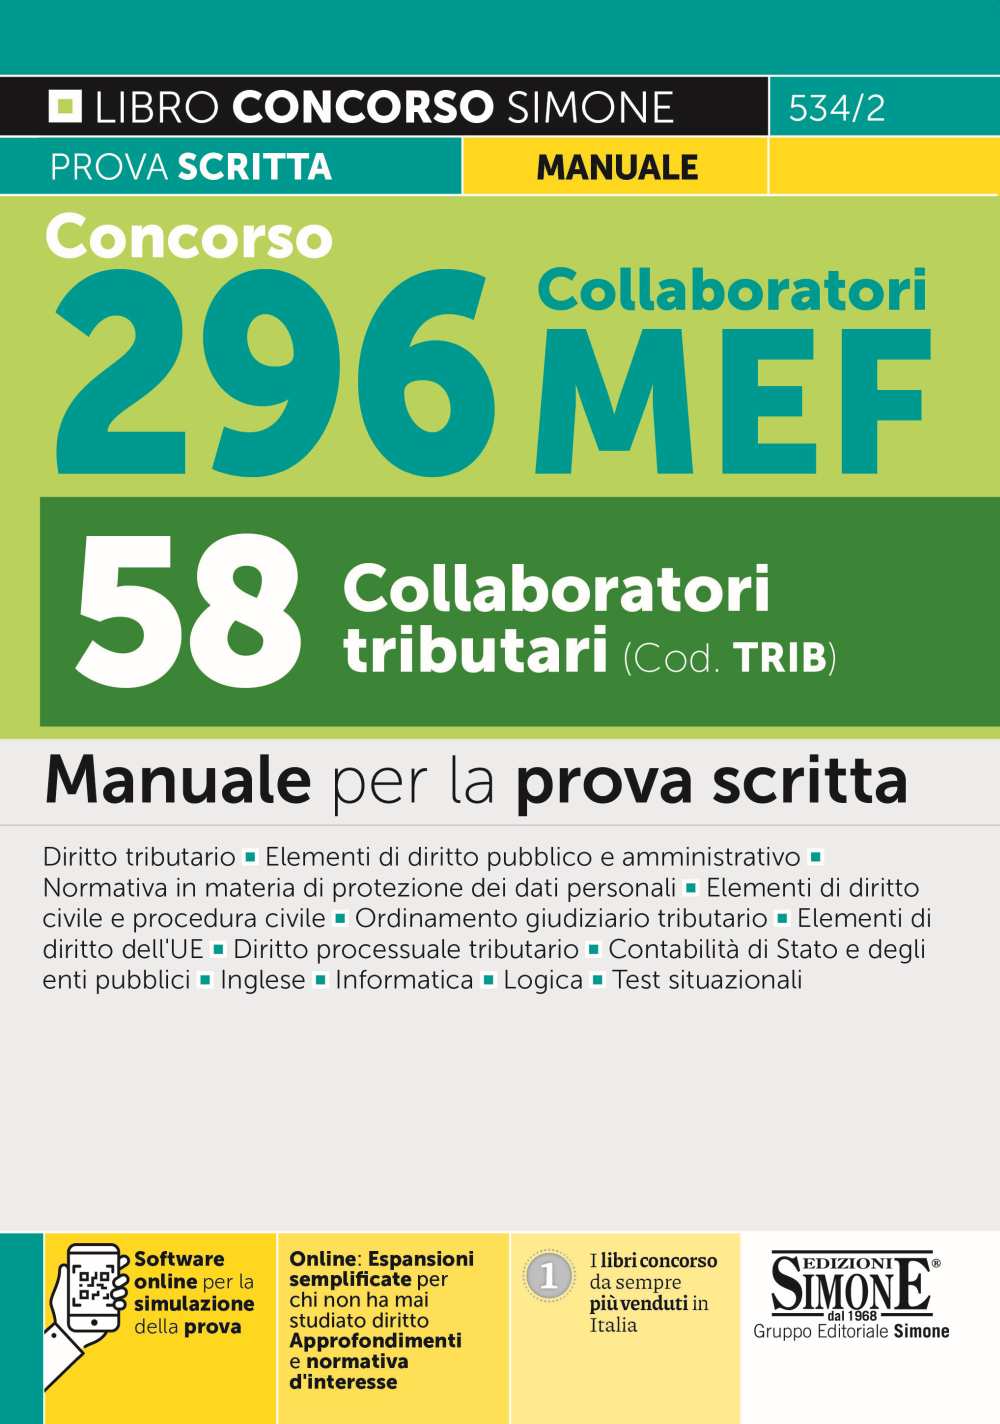 Concorso 296 Collaboratori MEF - 58 Collaboratori tributari - Manuale - 534/2